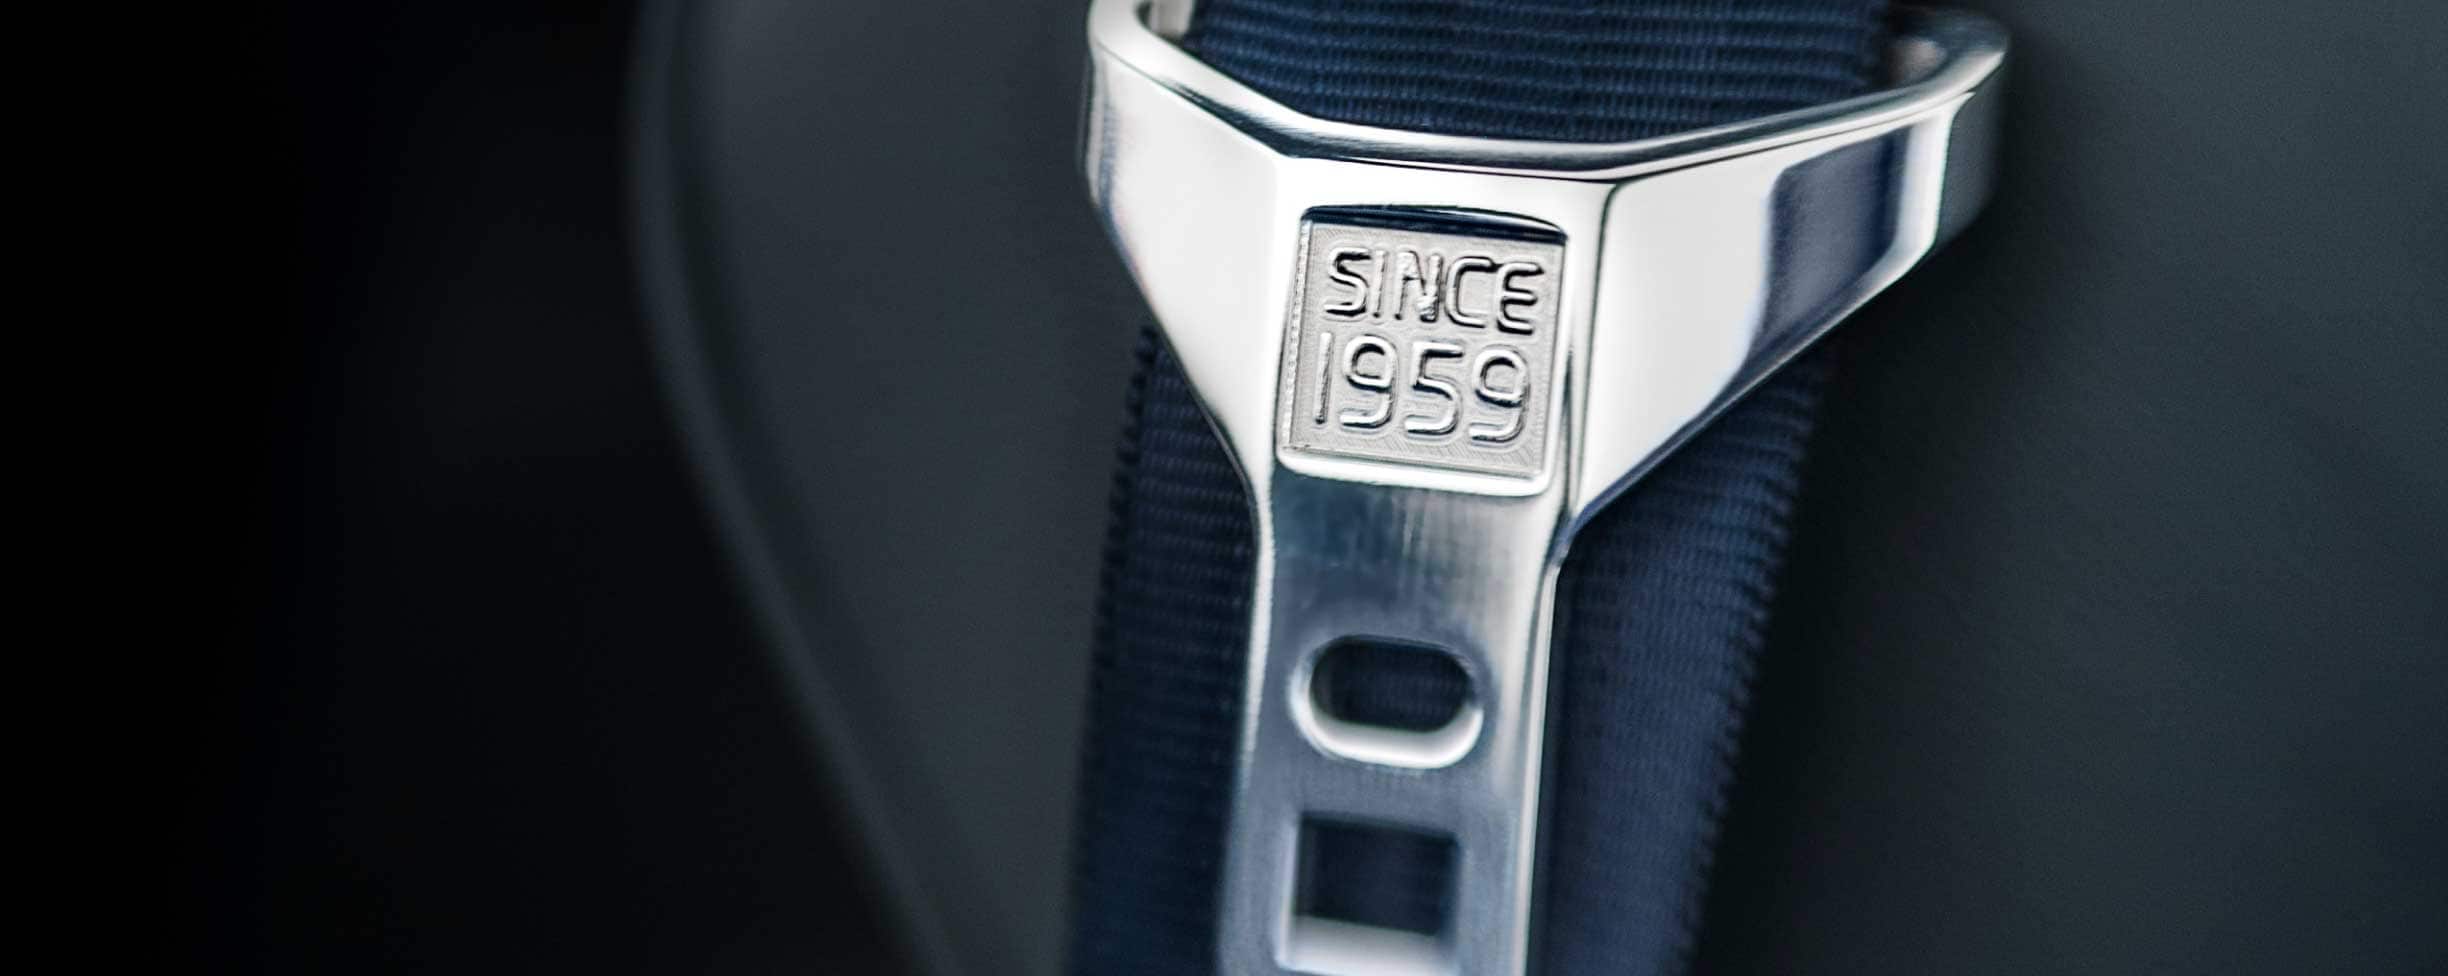 帶扣上刻有 "Since 1959" 字樣的灰色安全帶。